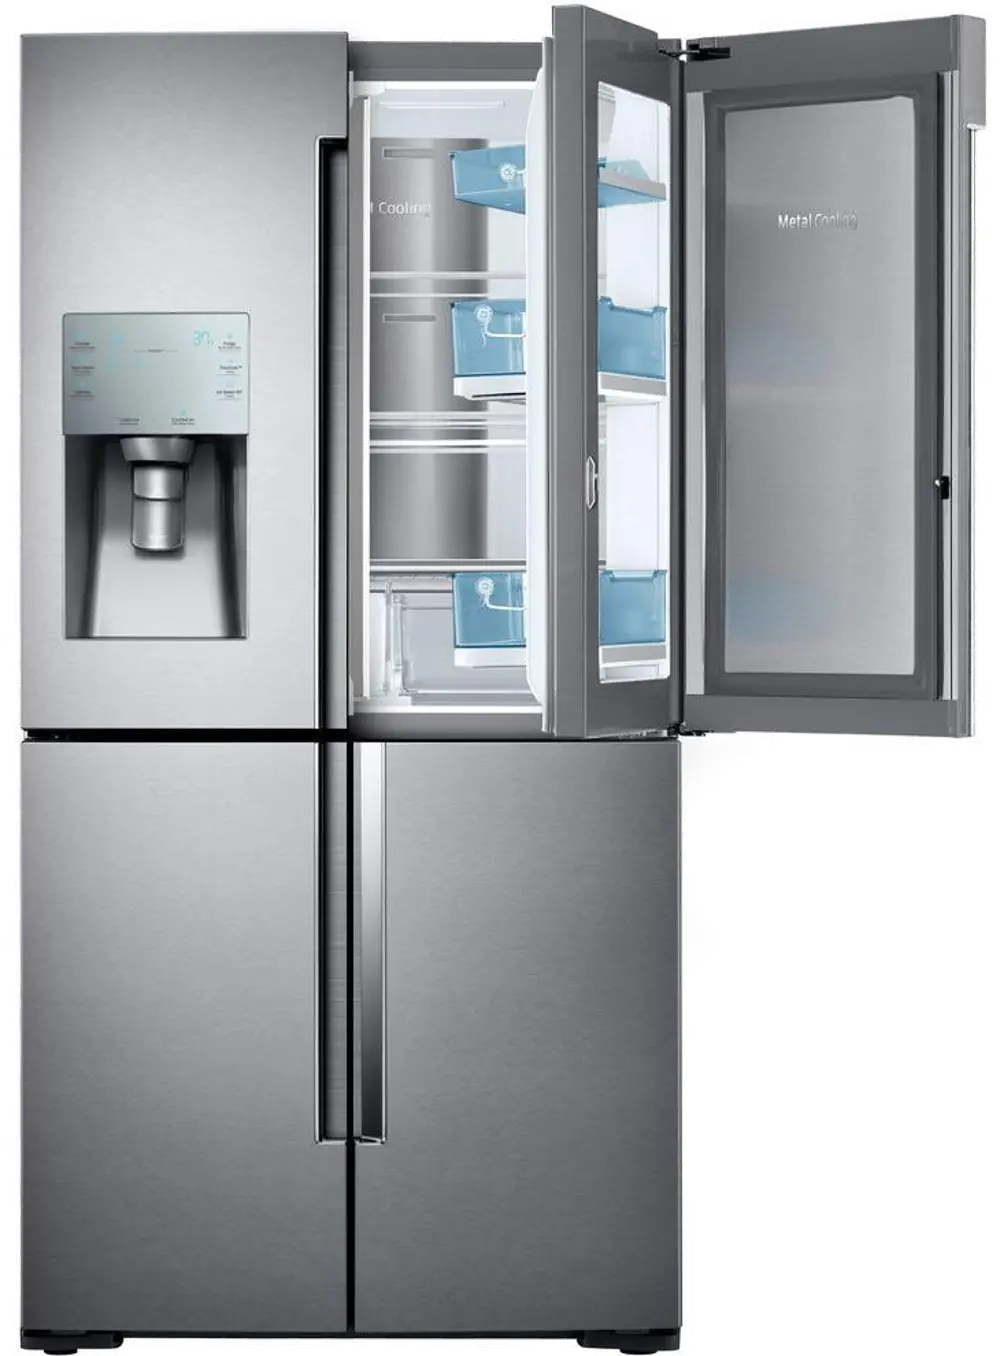 RF22K9381SR Samsung French Door-in-Door Smart Refrigerator with 4 Doors - 22.1 cu. ft., 36 Inch Stainless Steel Counter Depth-1